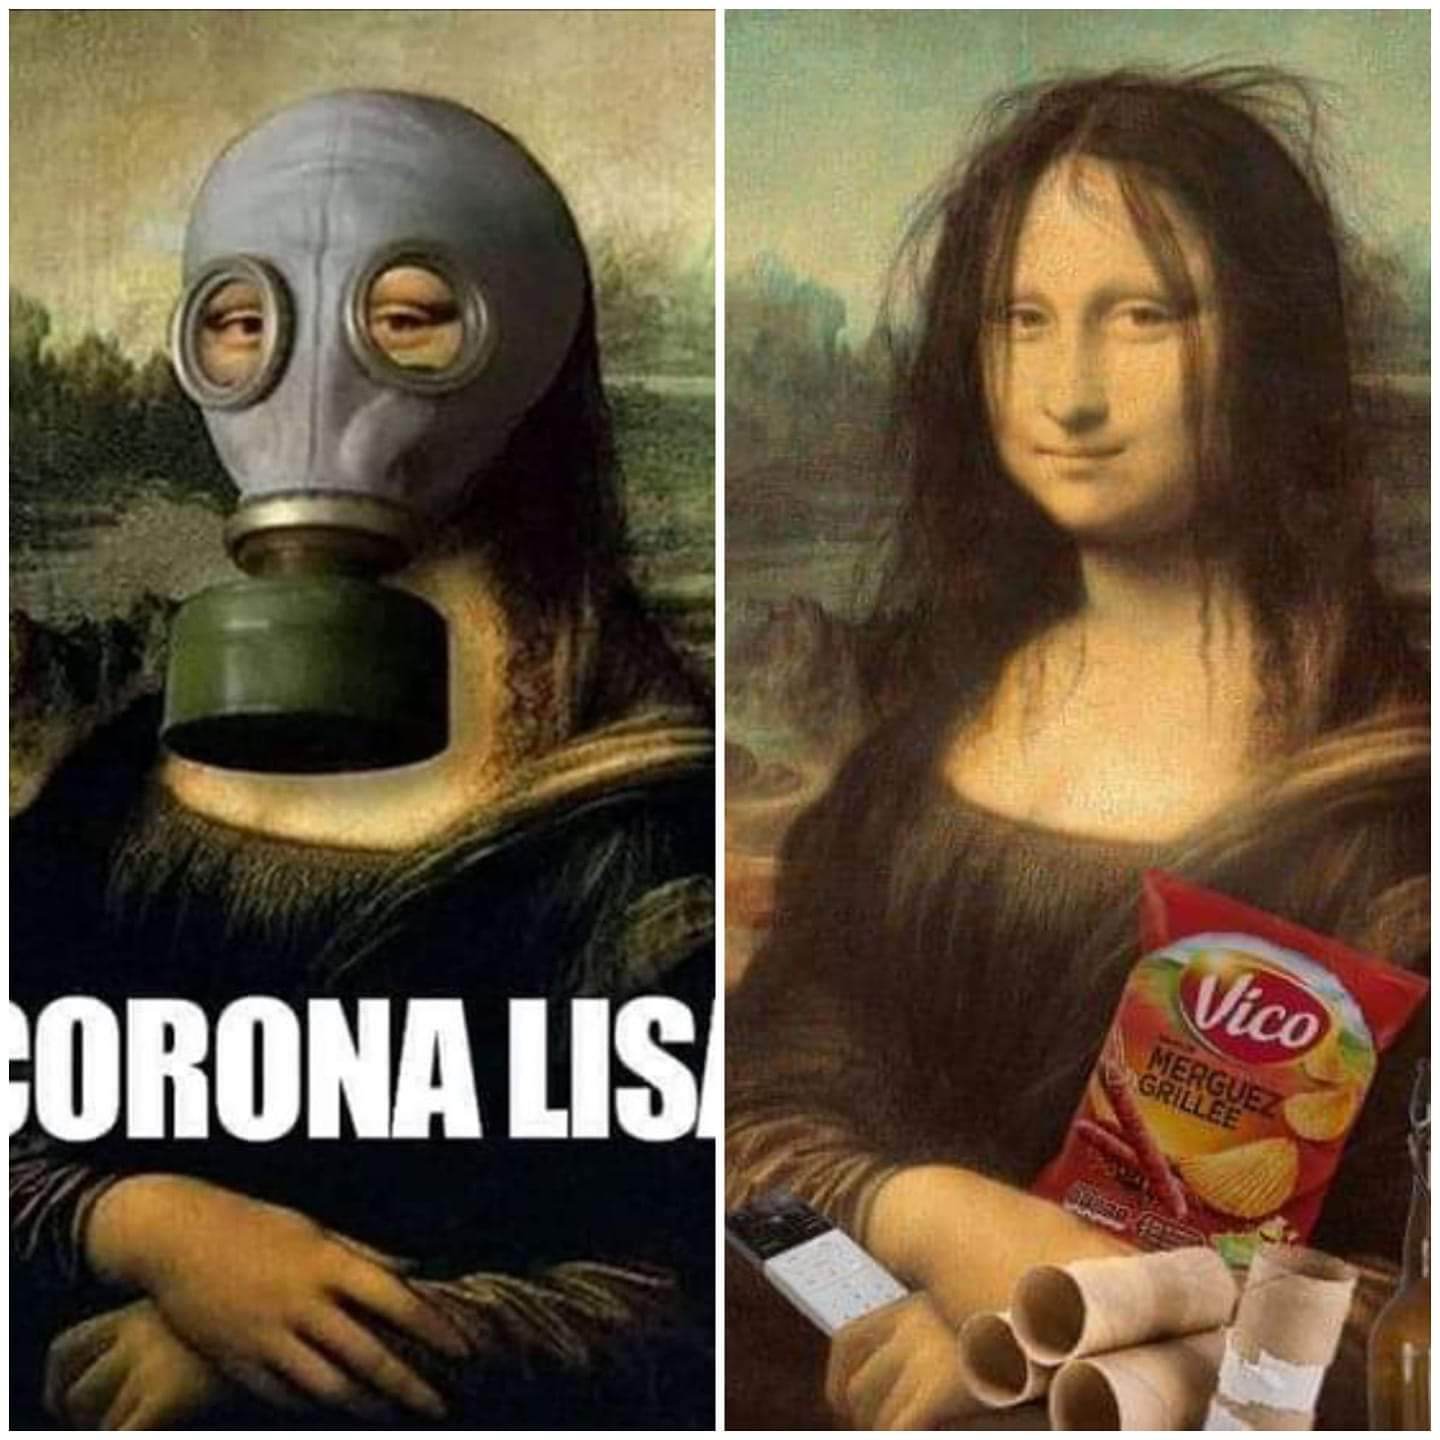 Corona Lisa.